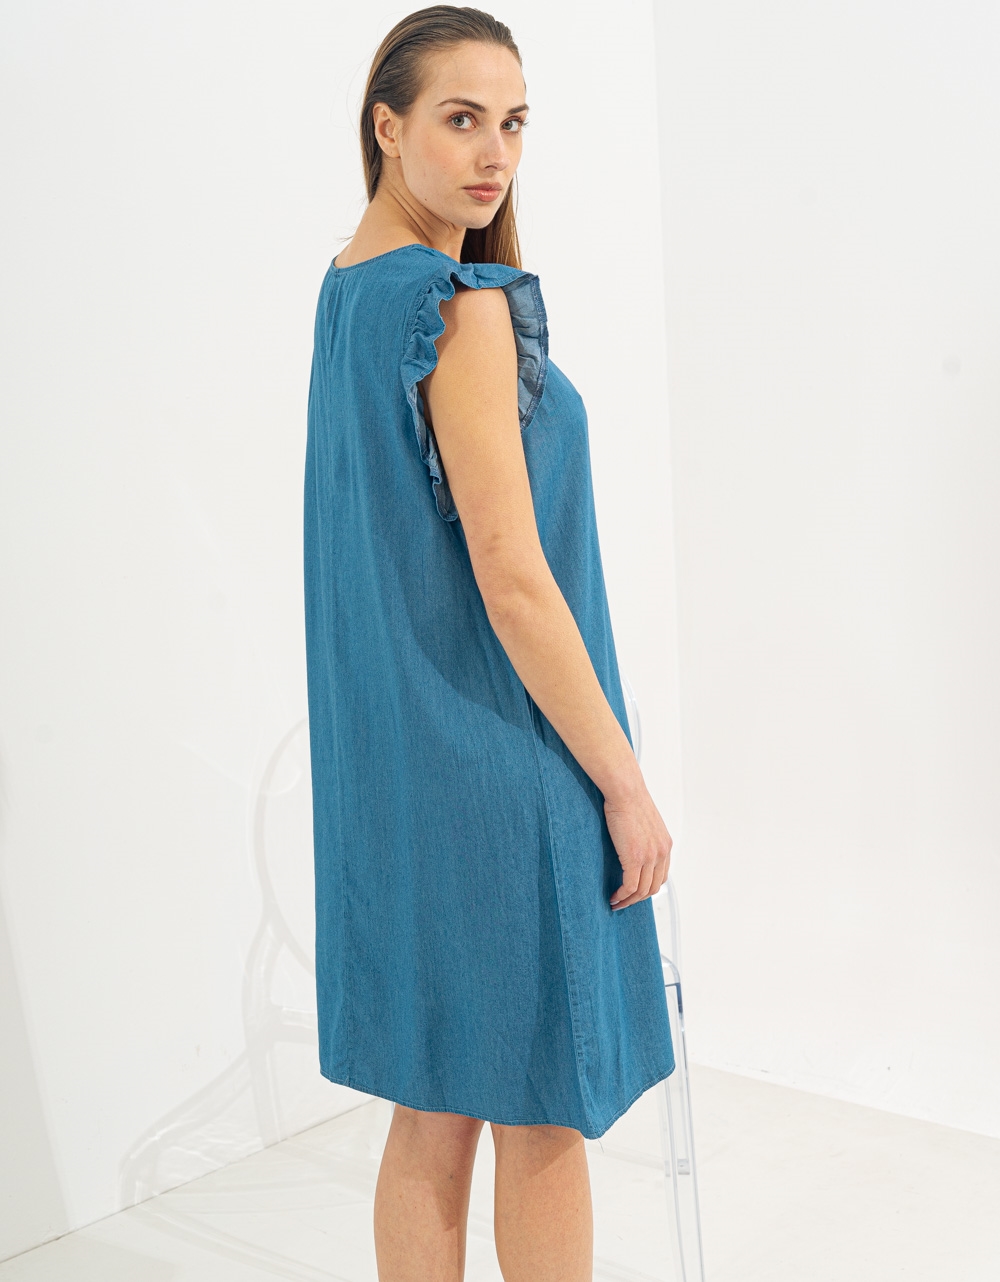 Εικόνα από Midi φόρεμα με βολάν στα μανίκια Μπλε